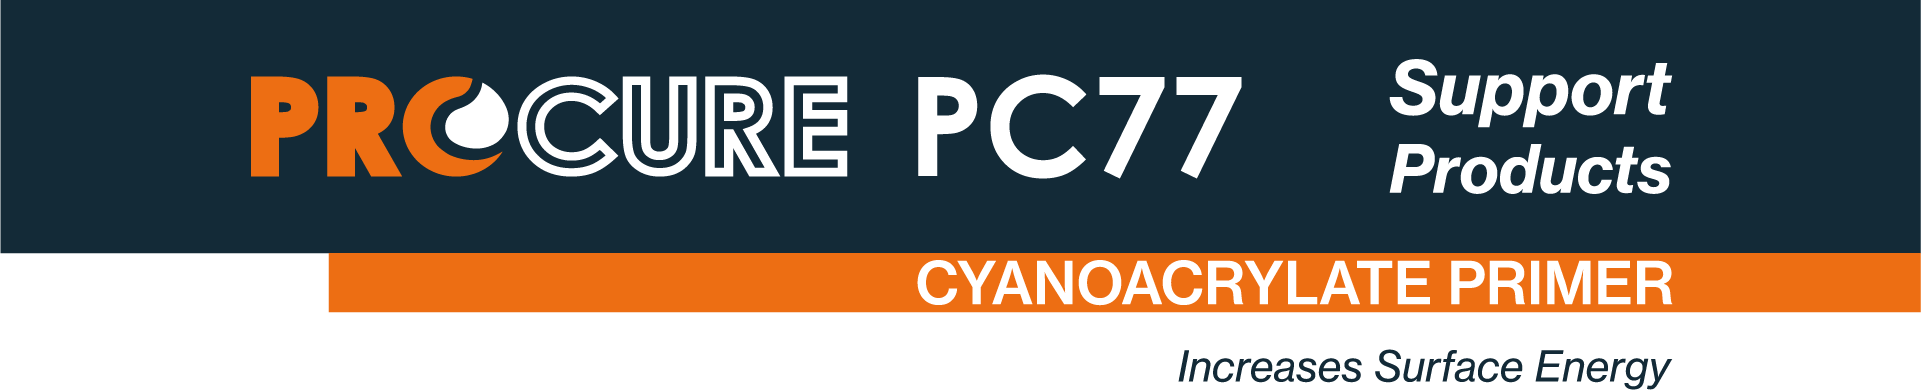 Procure PC77 Cyanoacrylate Primer